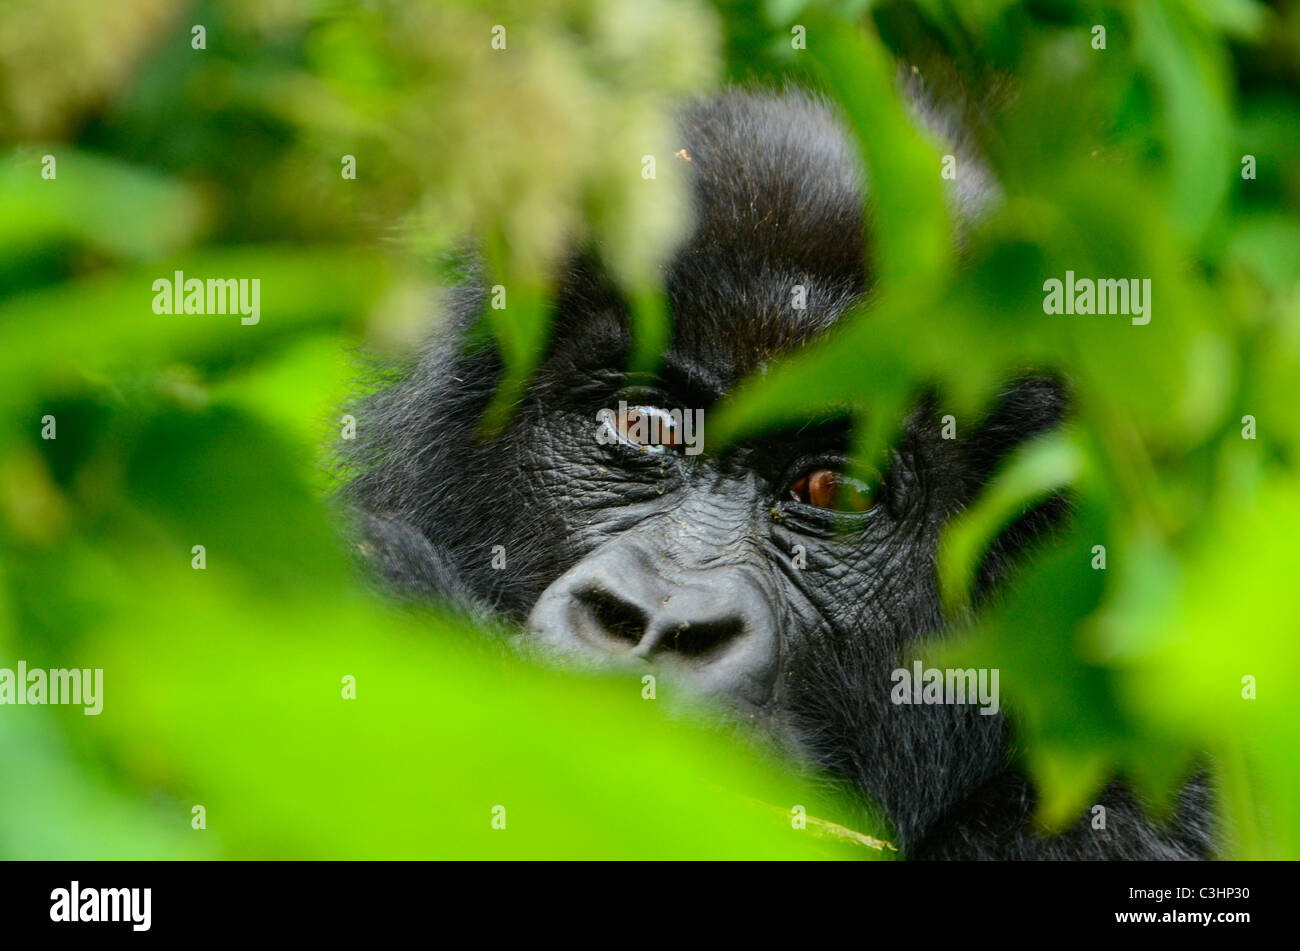 Gorilla trekking am Buhimo im Virunga Nationalpark, demokratische Republik Kongo. Verlässt der junge starrte durch gorilla Stockfoto